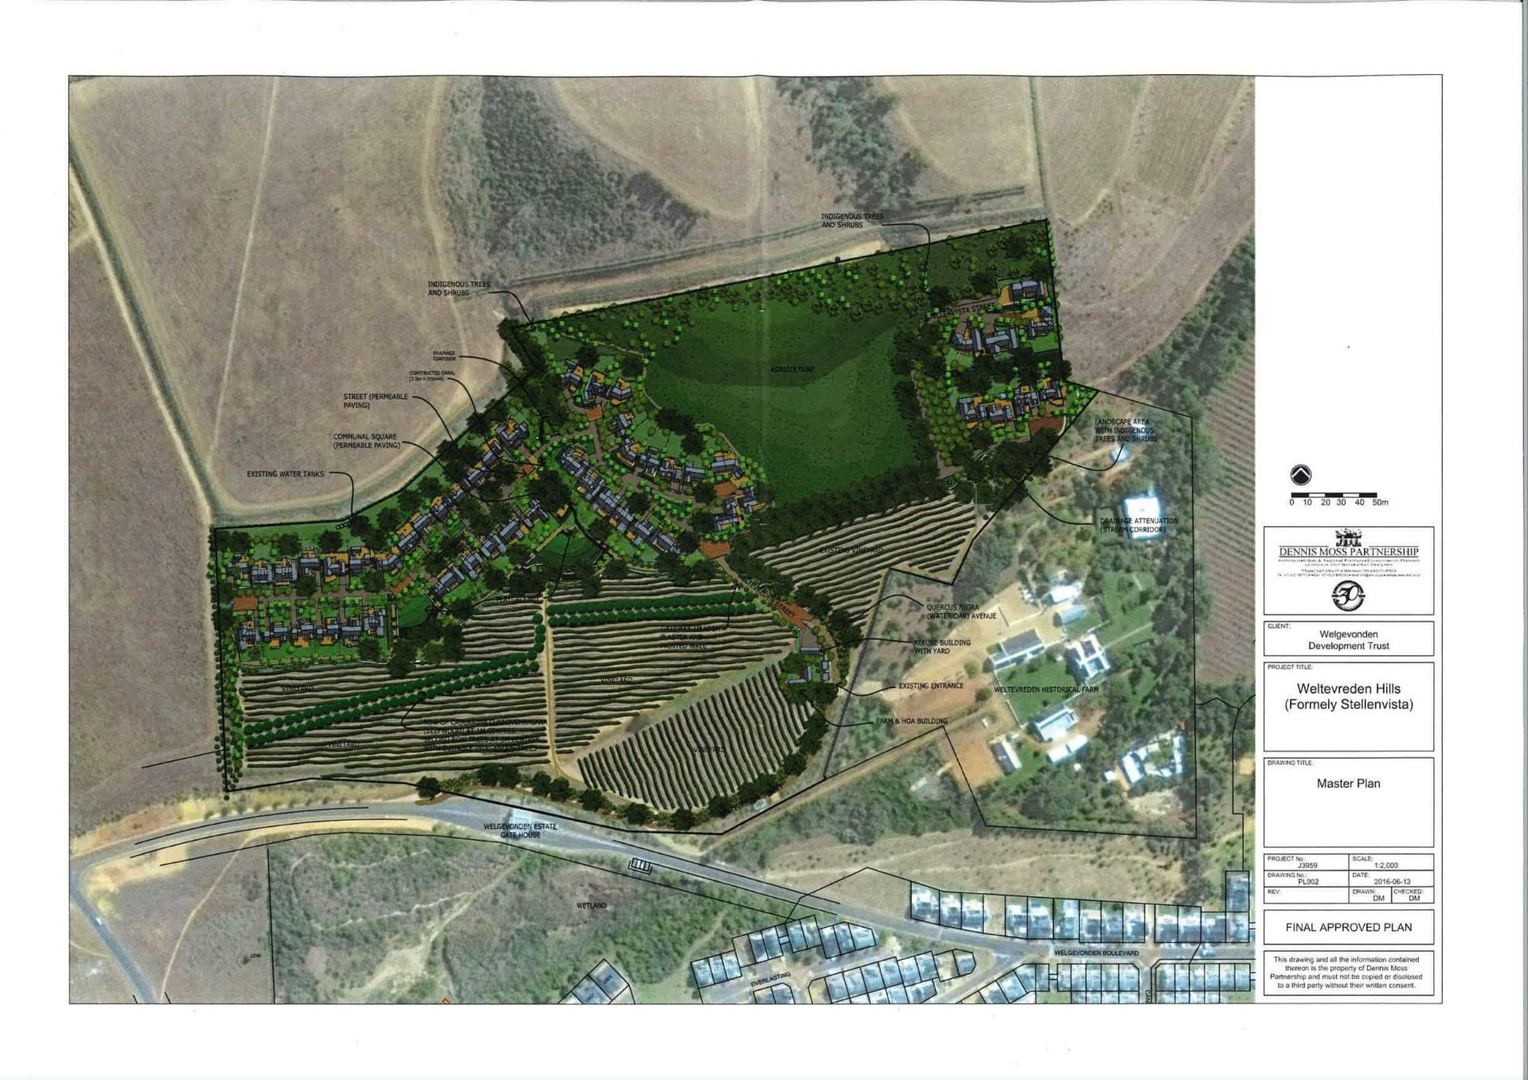 Land in Weltevreden Hills Estate - Estate layout and plan.jpg